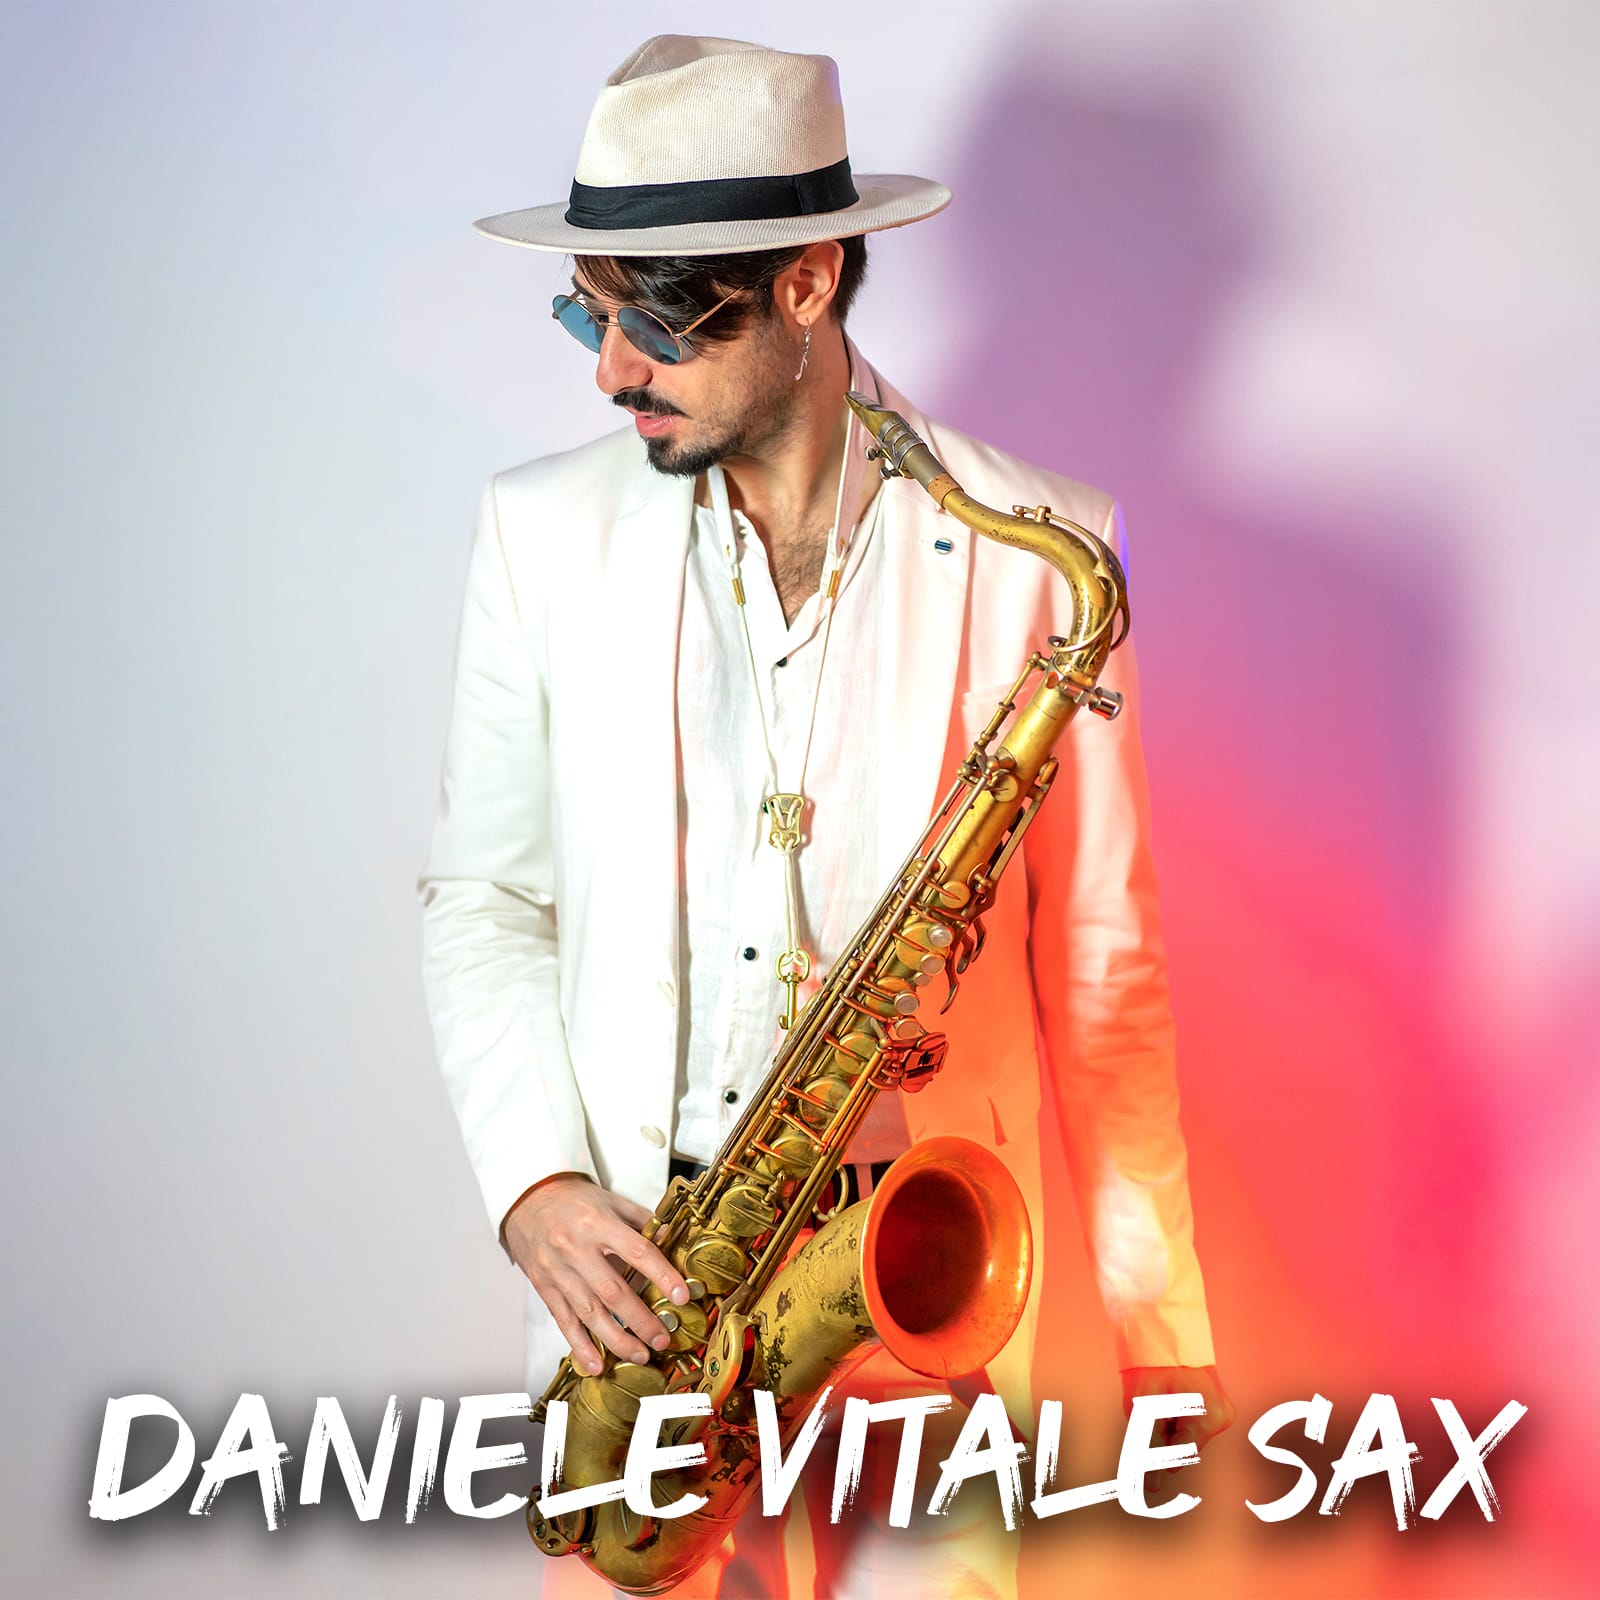 Daniele Vitale Sax: dalla Campania alla conquista del Mondo